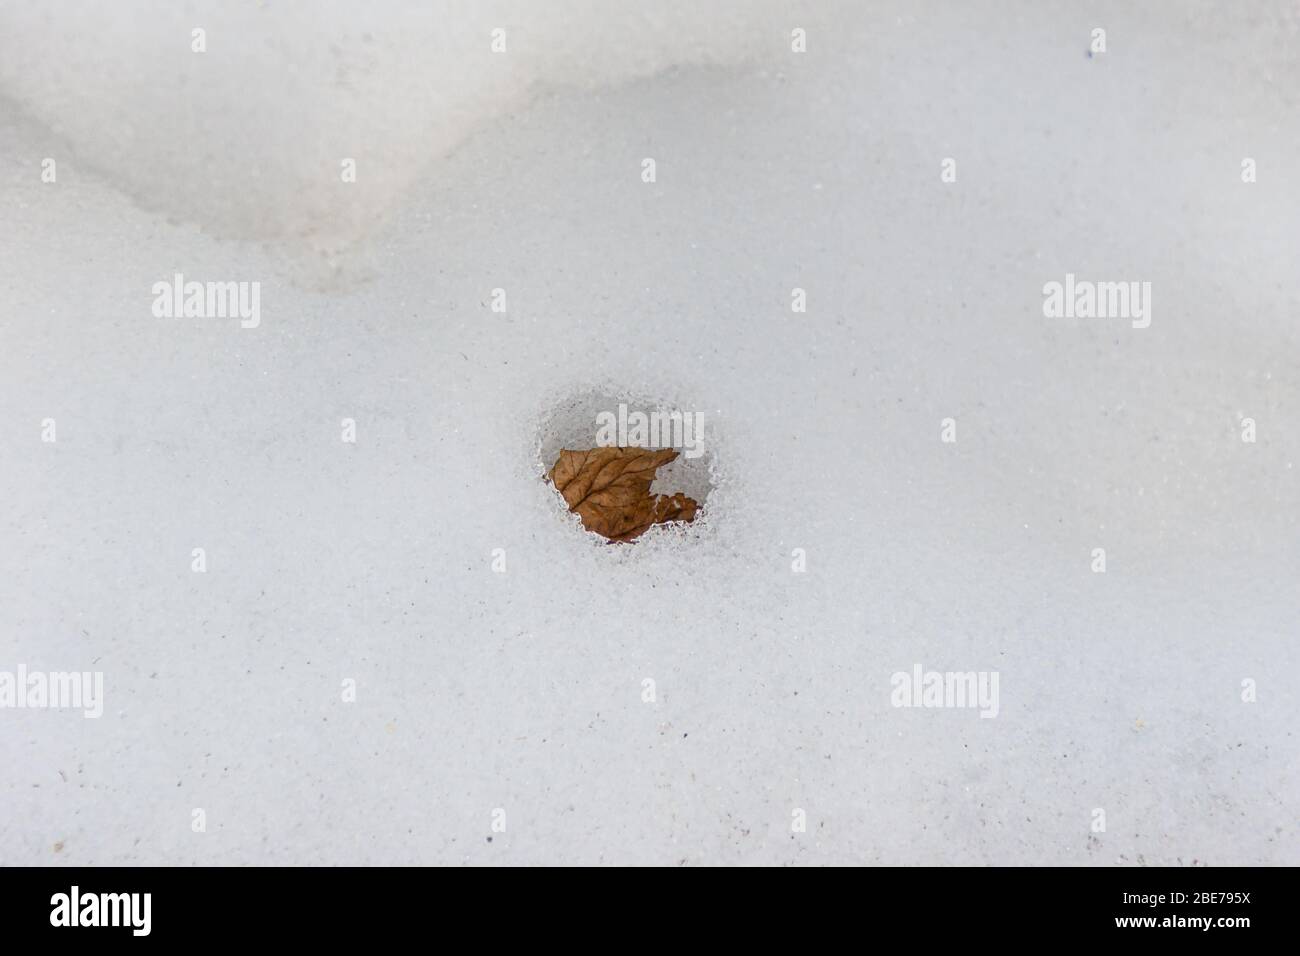 feuille sèche à l'intérieur d'une neige chauffée dans les rayons du soleil de printemps et de la neige fondue Banque D'Images